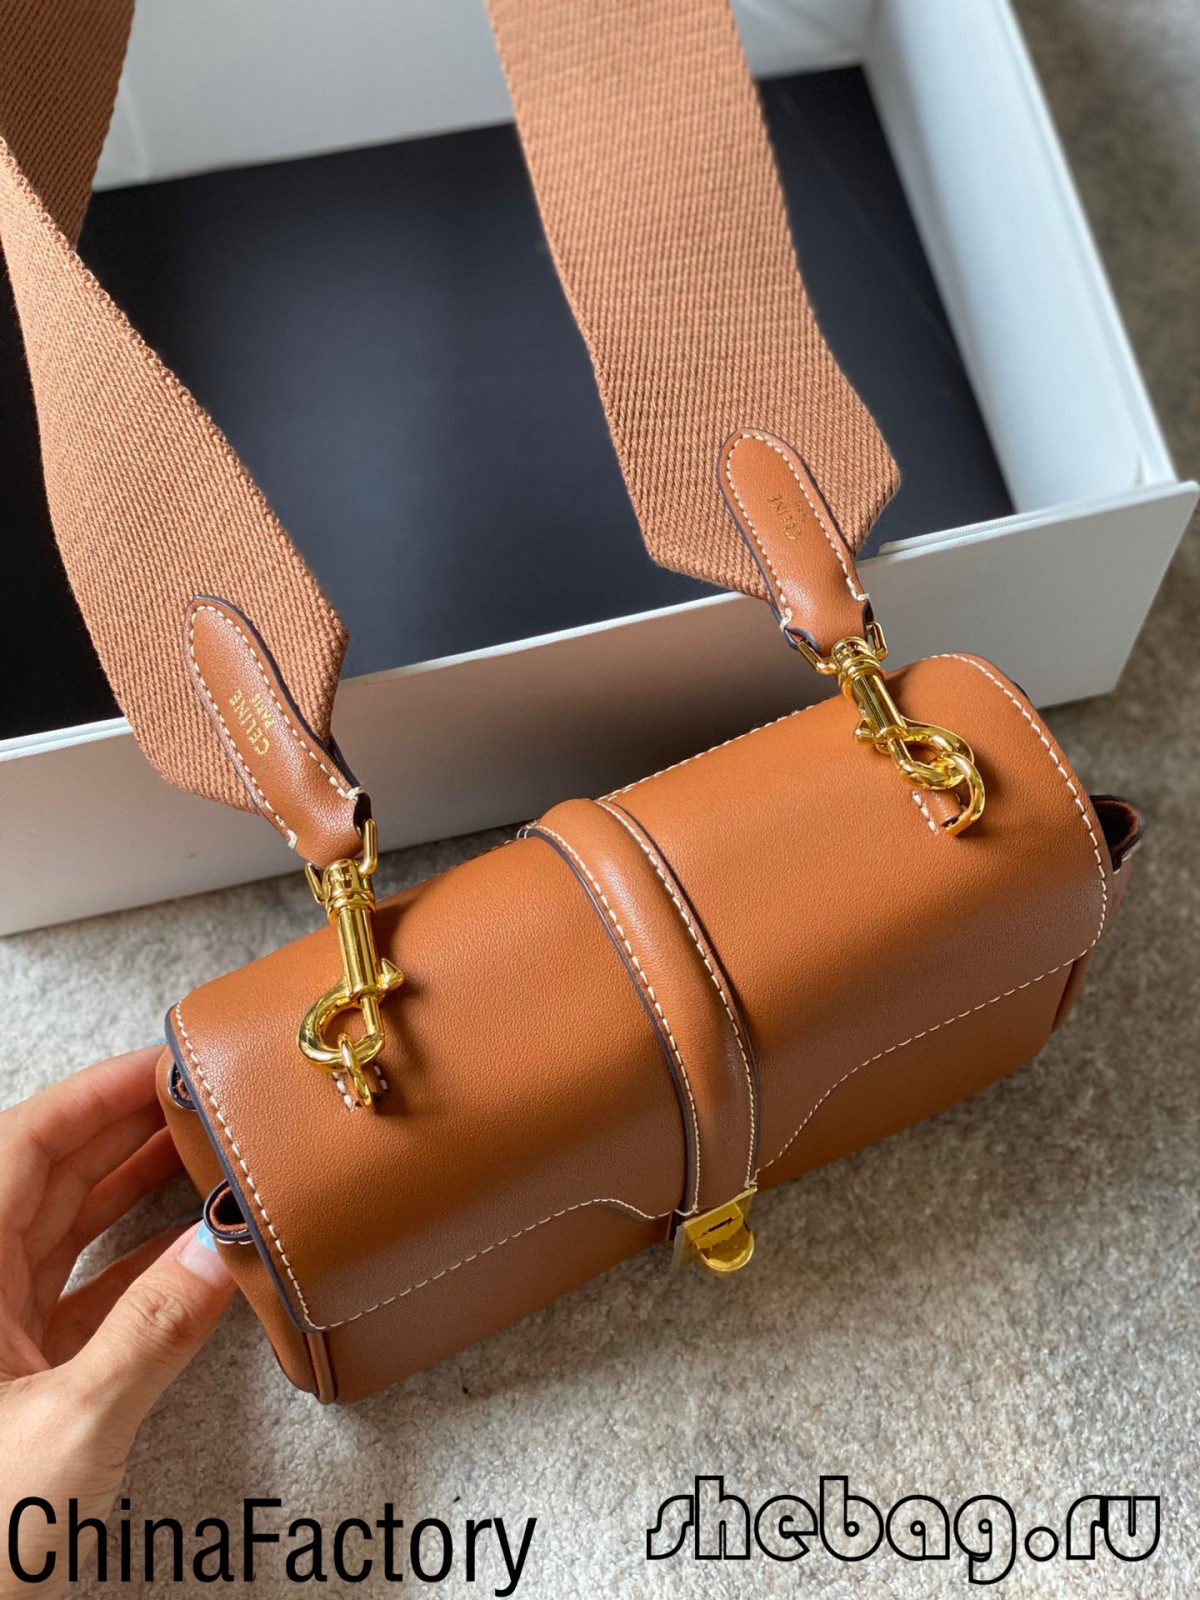 Де я можу знайти найкращі репліки сумок Celine: Celine Tabou (останнє 2022 року) - Інтернет-магазин підробленої сумки Louis Vuitton найкращої якості, копія дизайнерської сумки ru